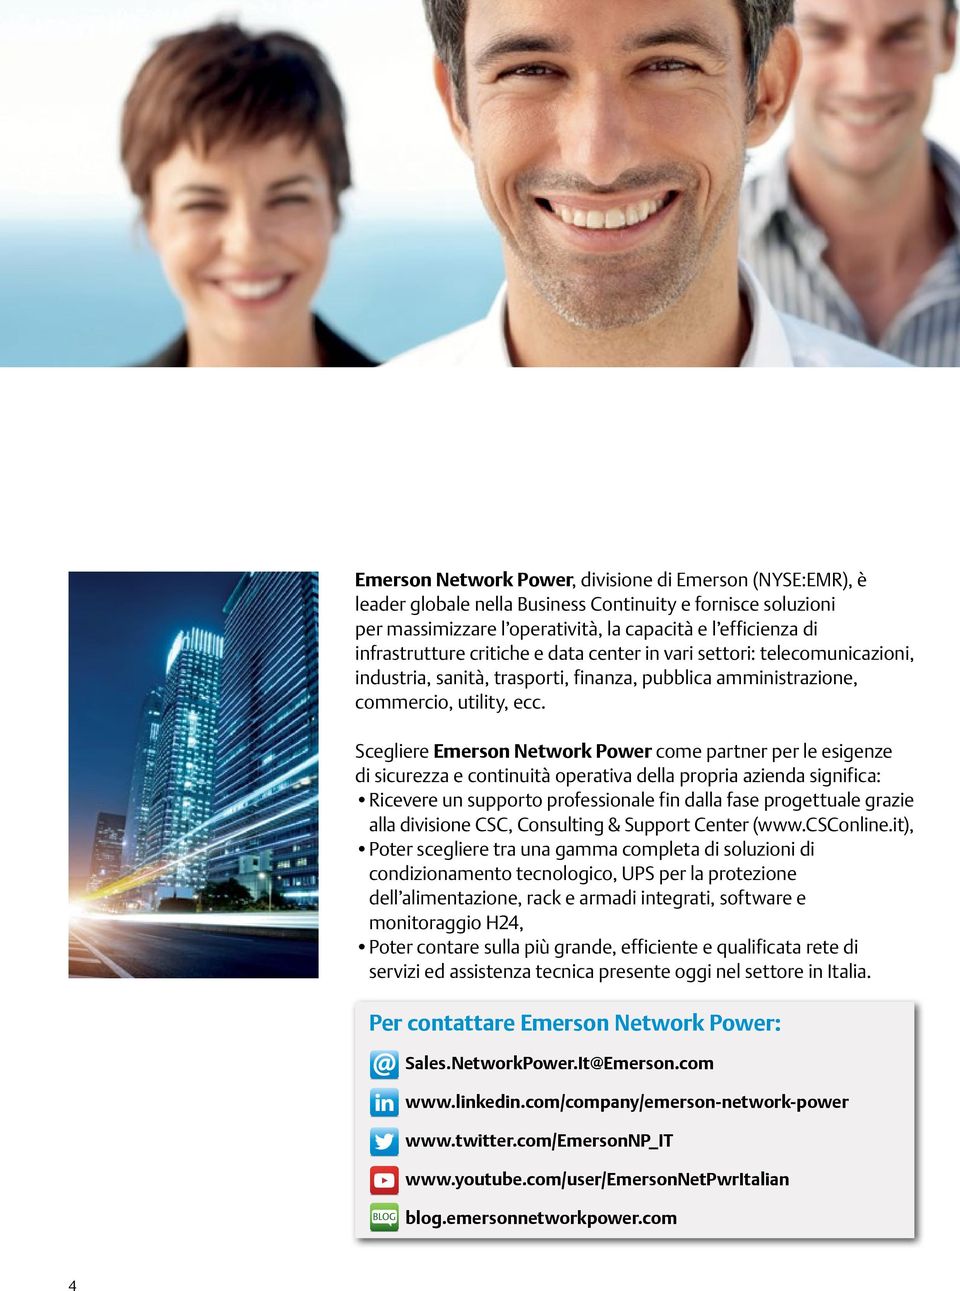 Scegliere Emerson Network Power come partner per le esigenze di sicurezza e continuità operativa della propria azienda significa: Ricevere un supporto professionale fin dalla fase progettuale grazie